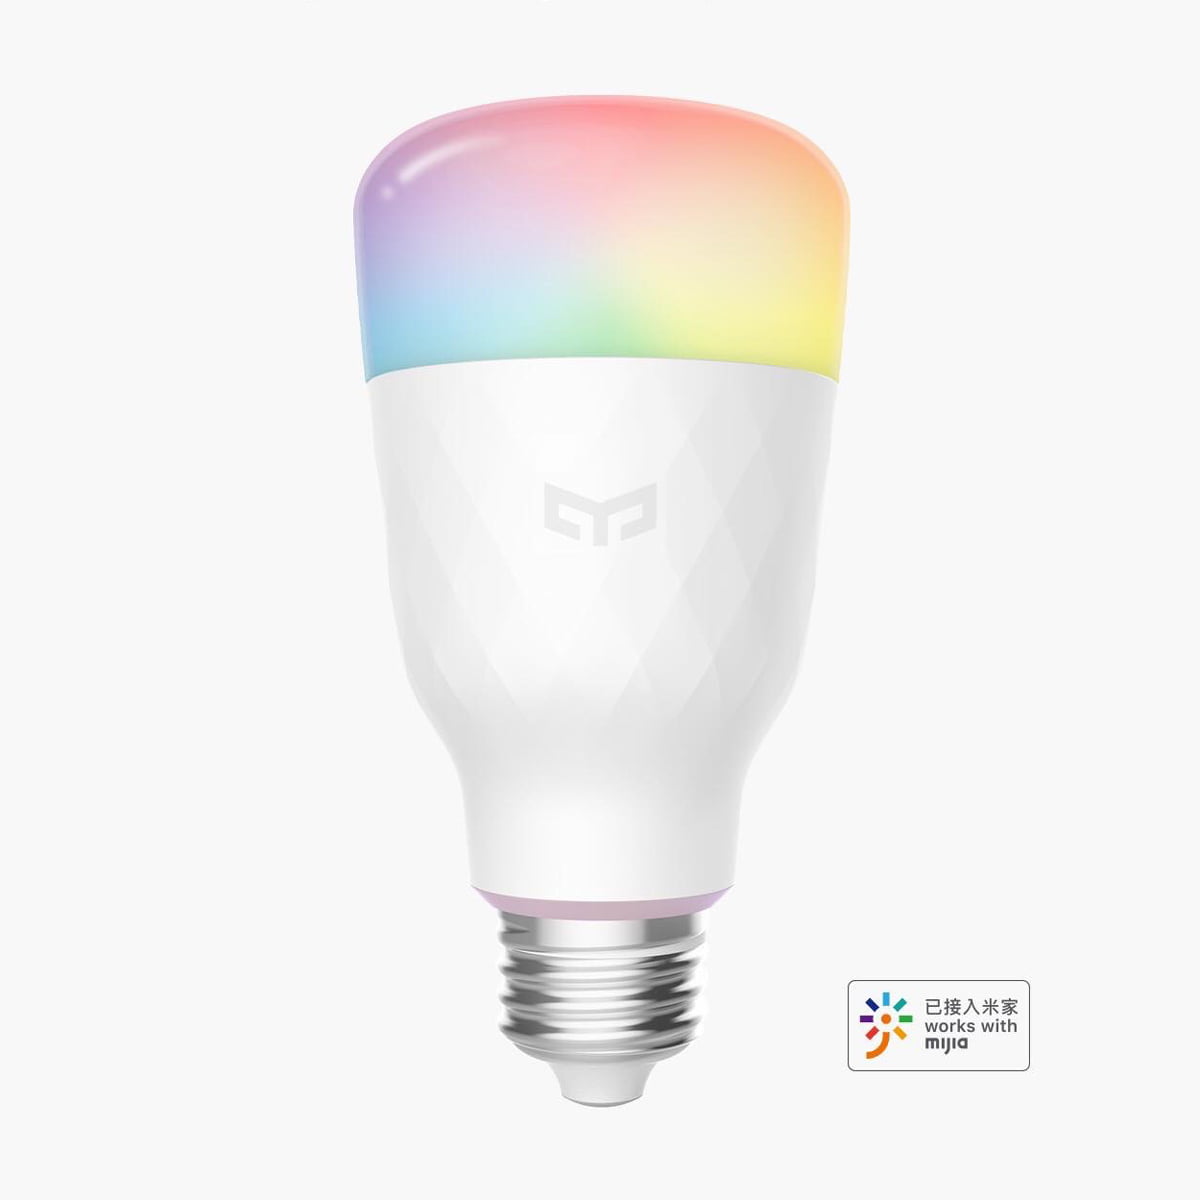 Yeelight Announce Details of Improved Colour Smart Bulb – Homekit